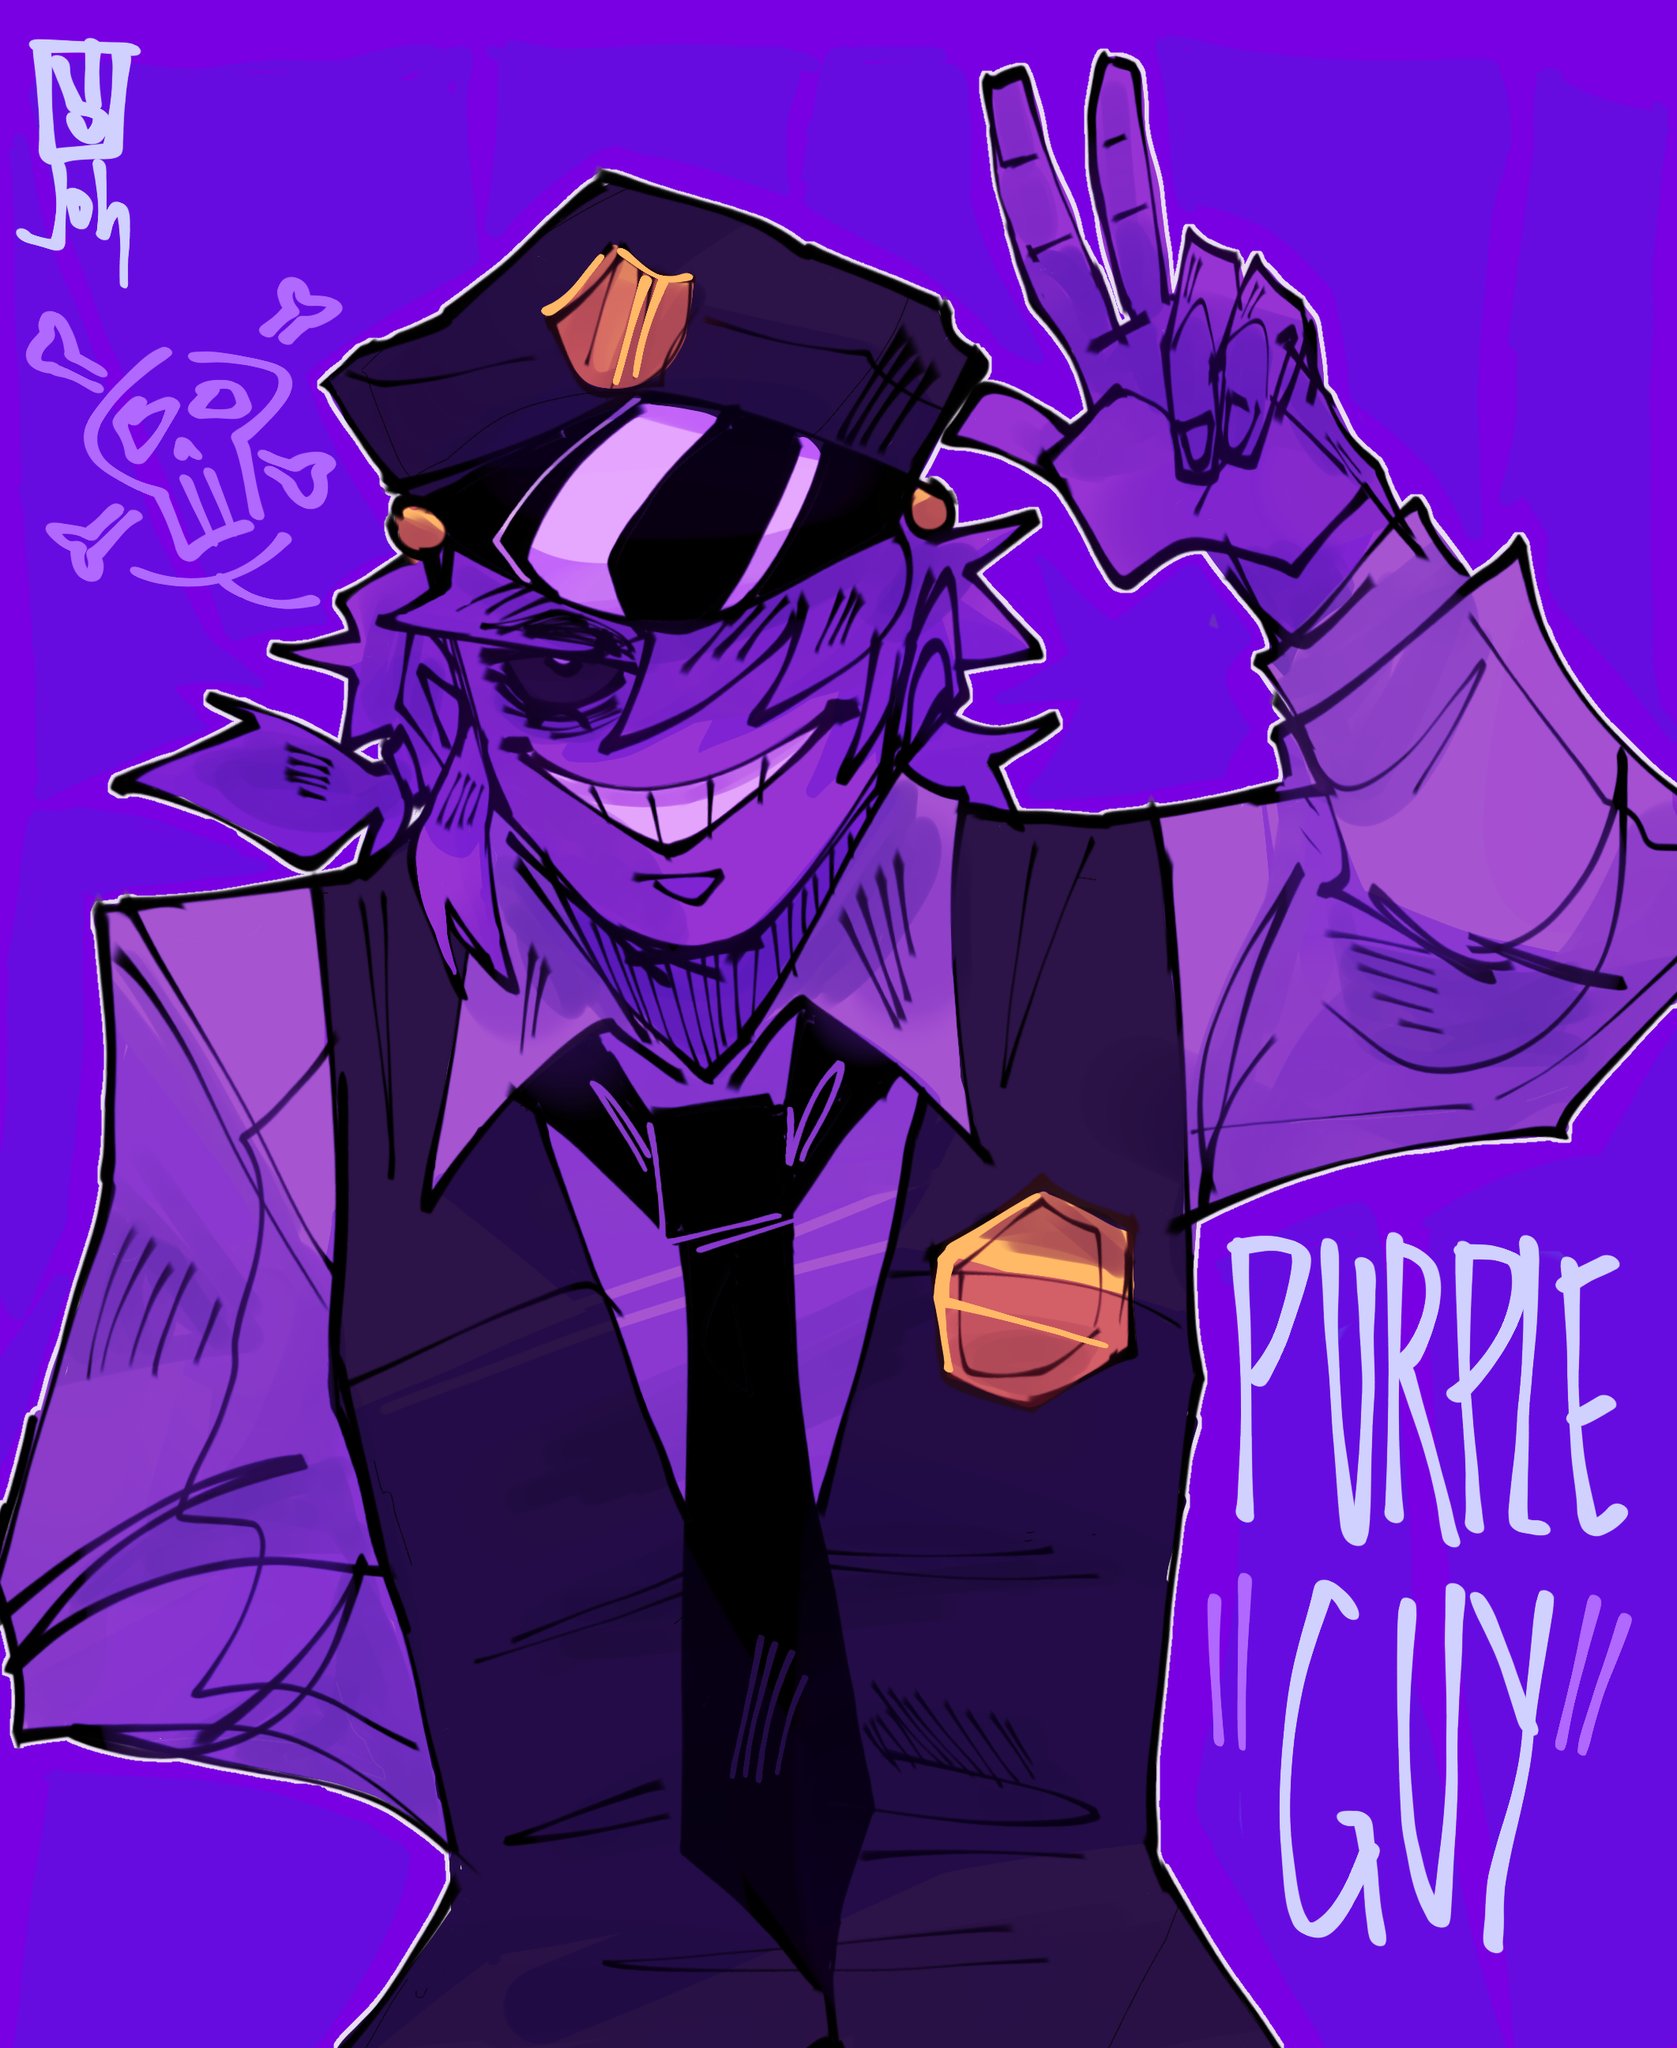 Pixilart - Purple guy looking Sus by anime-love-art